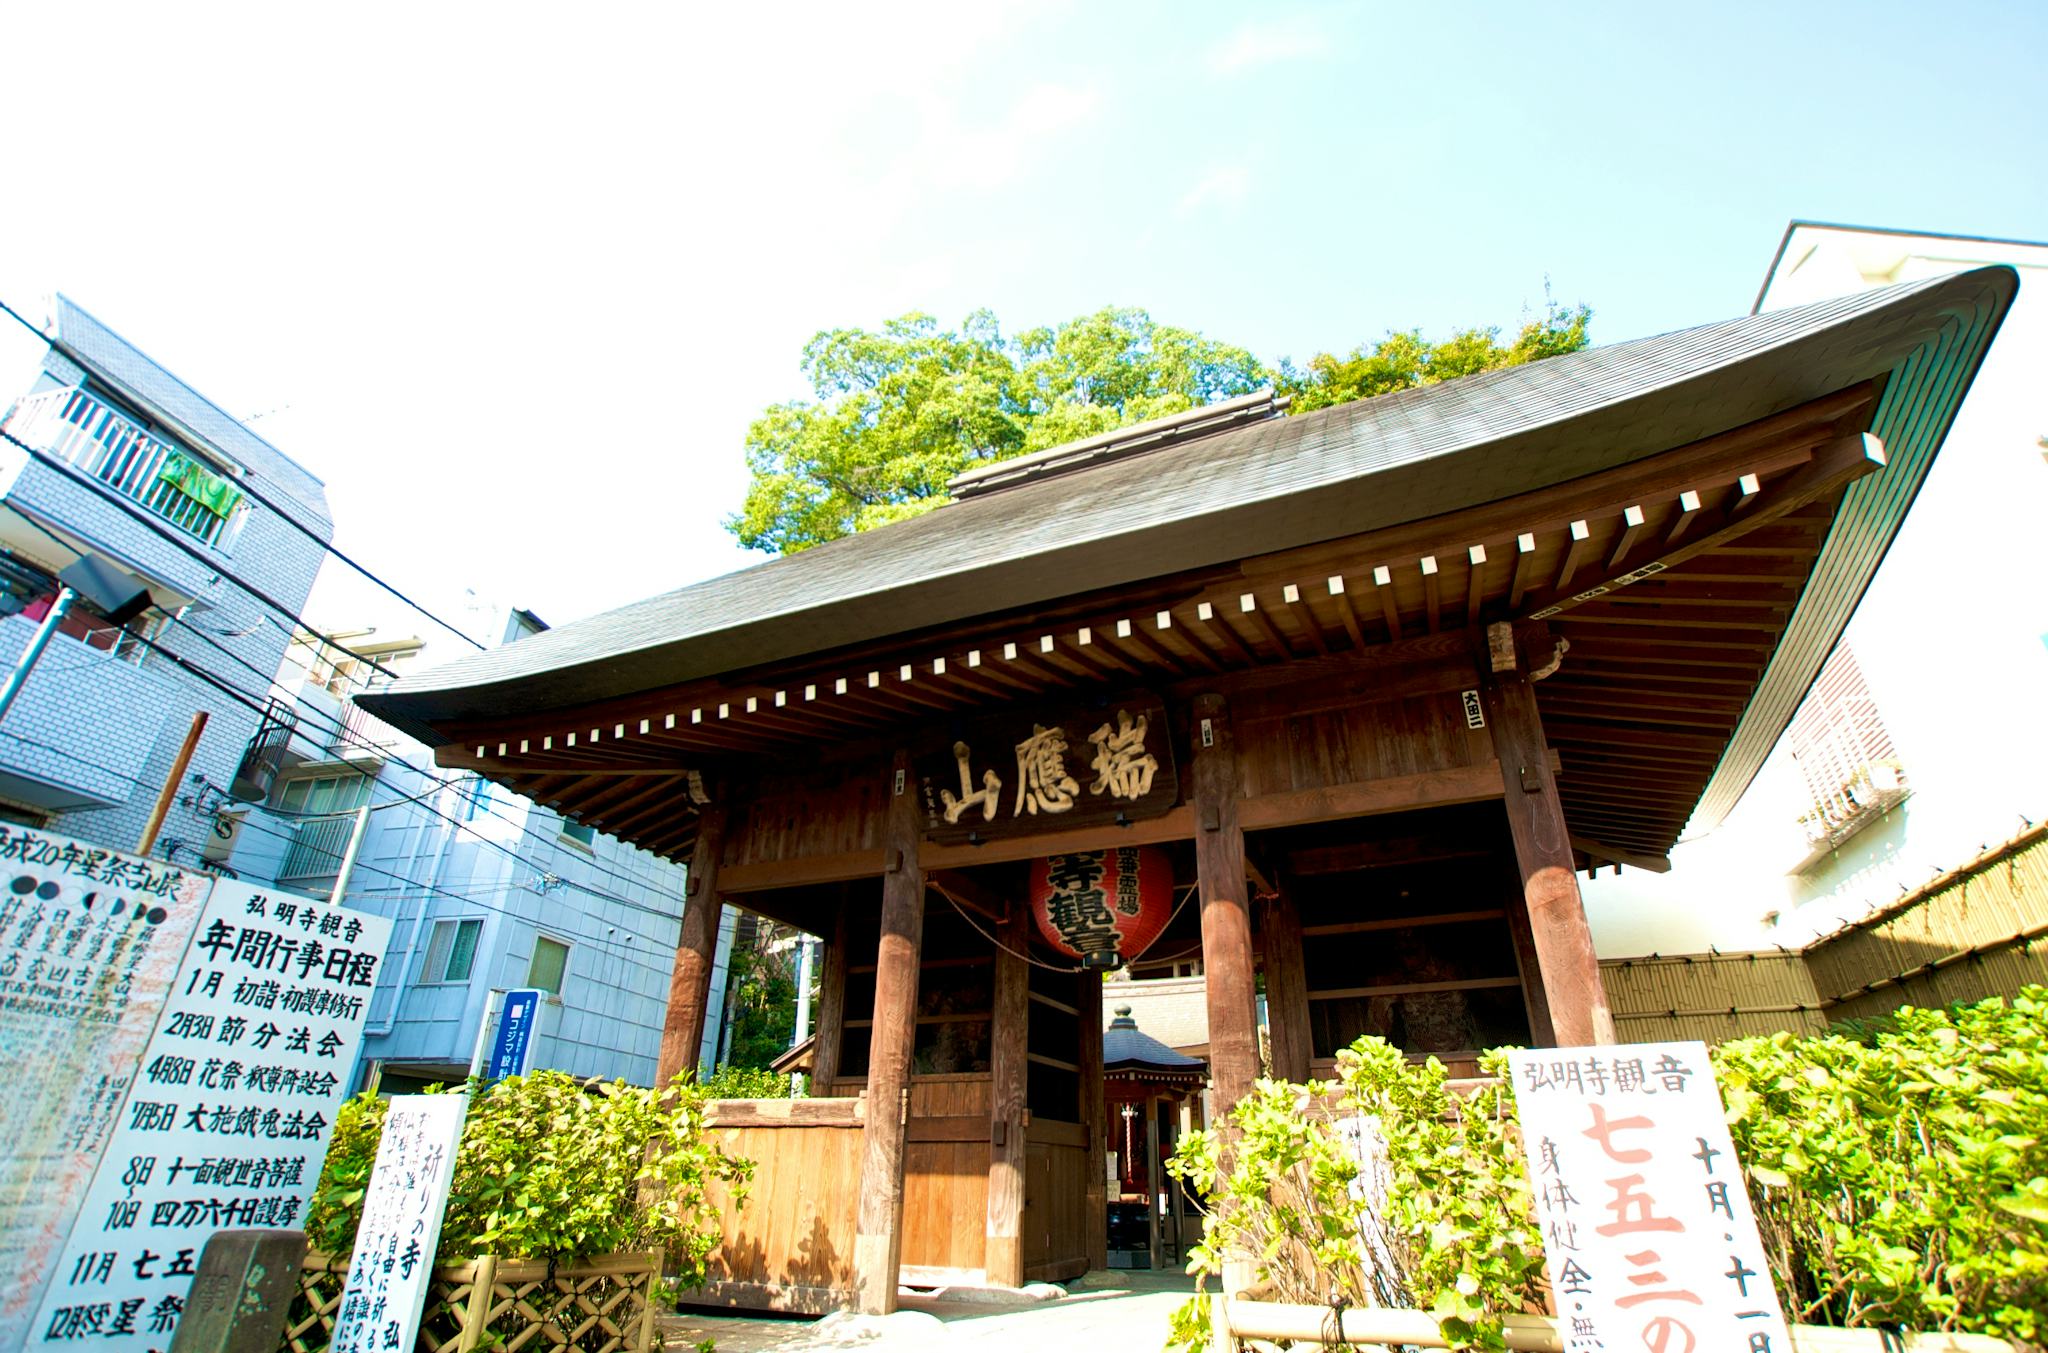 Gumyo-ji